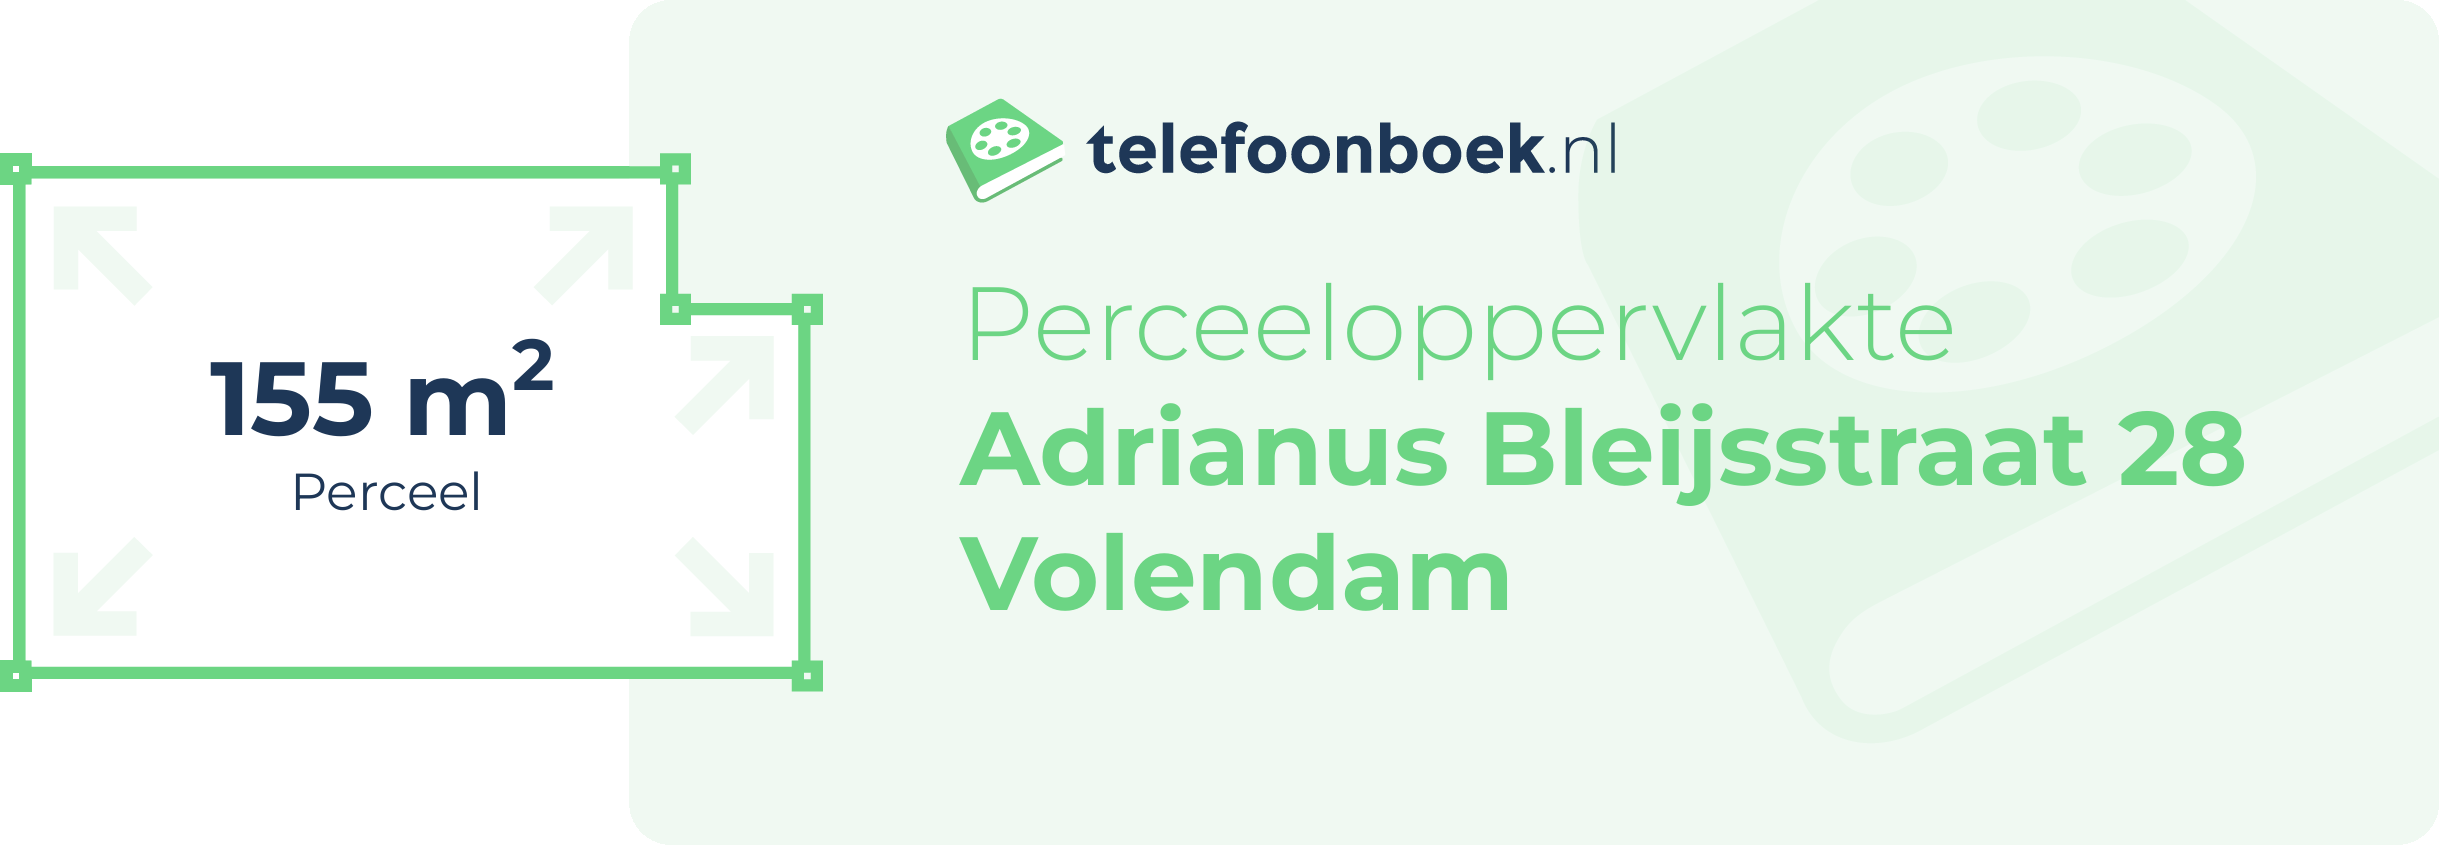 Perceeloppervlakte Adrianus Bleijsstraat 28 Volendam